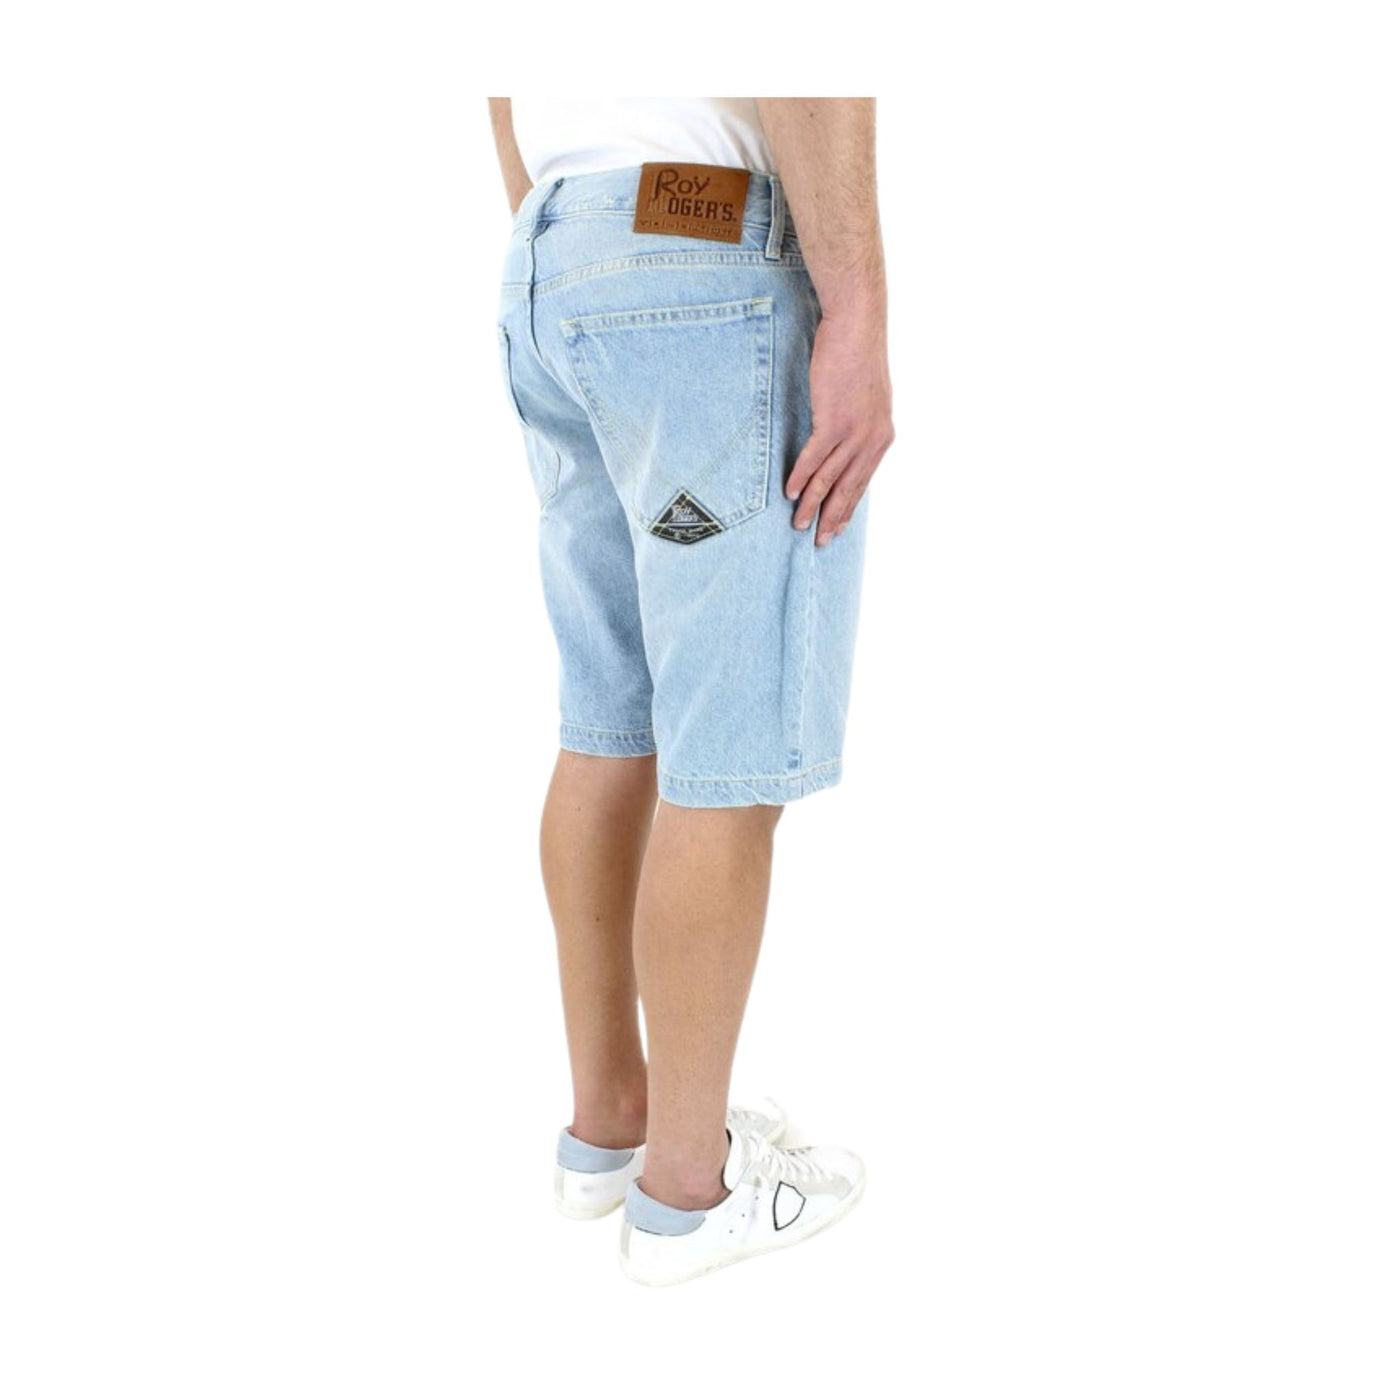 Bermuda shorts for men in five-pocket denim